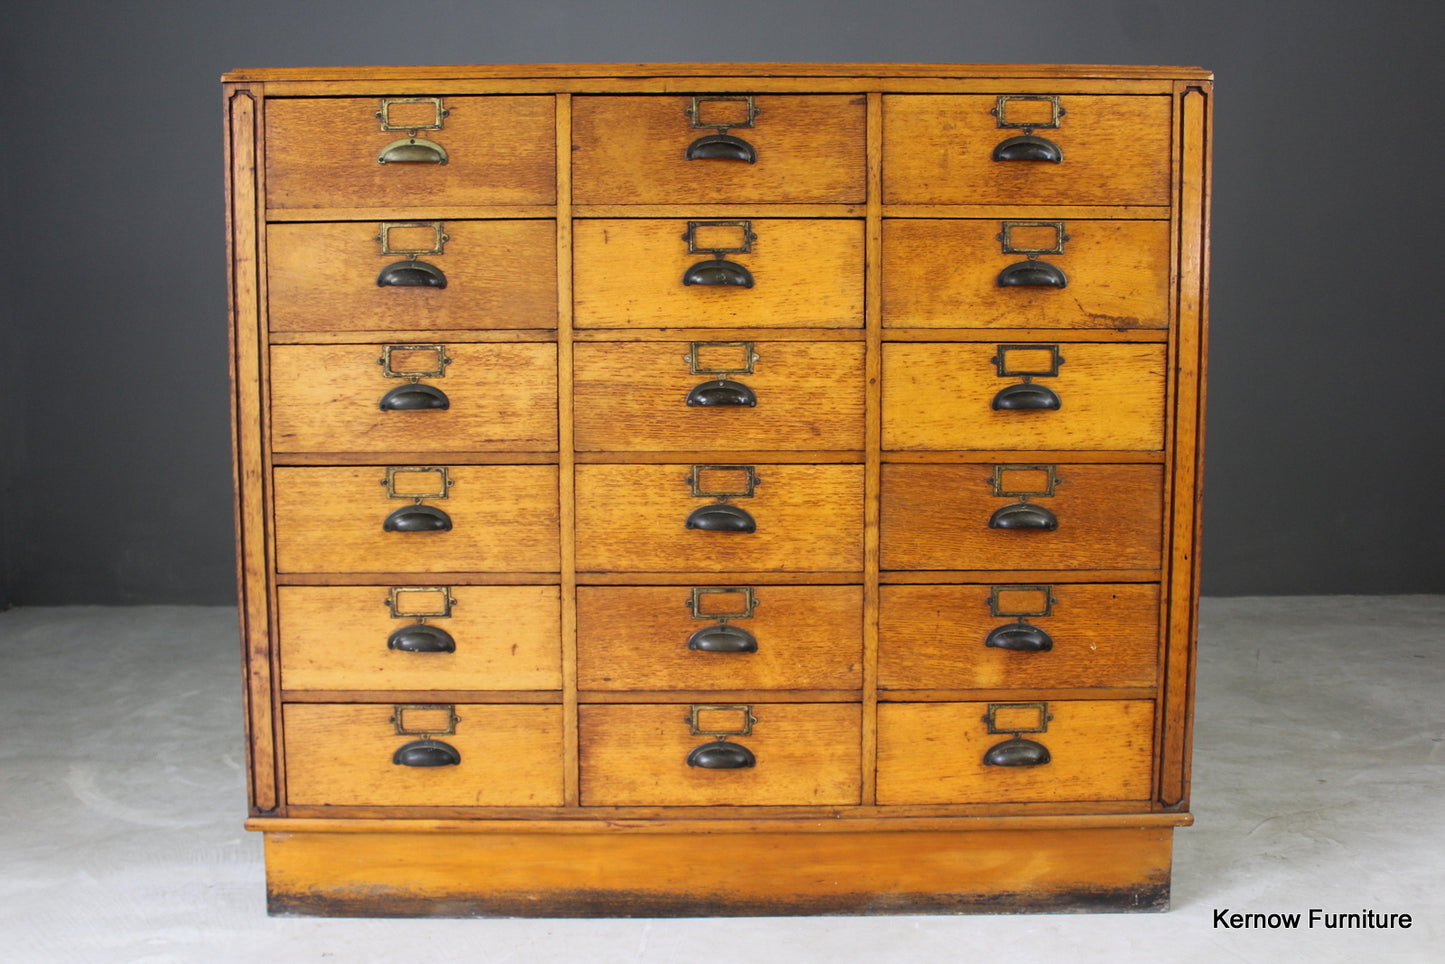 1940s Bank of Haberdashery Drawers - Kernow Furniture